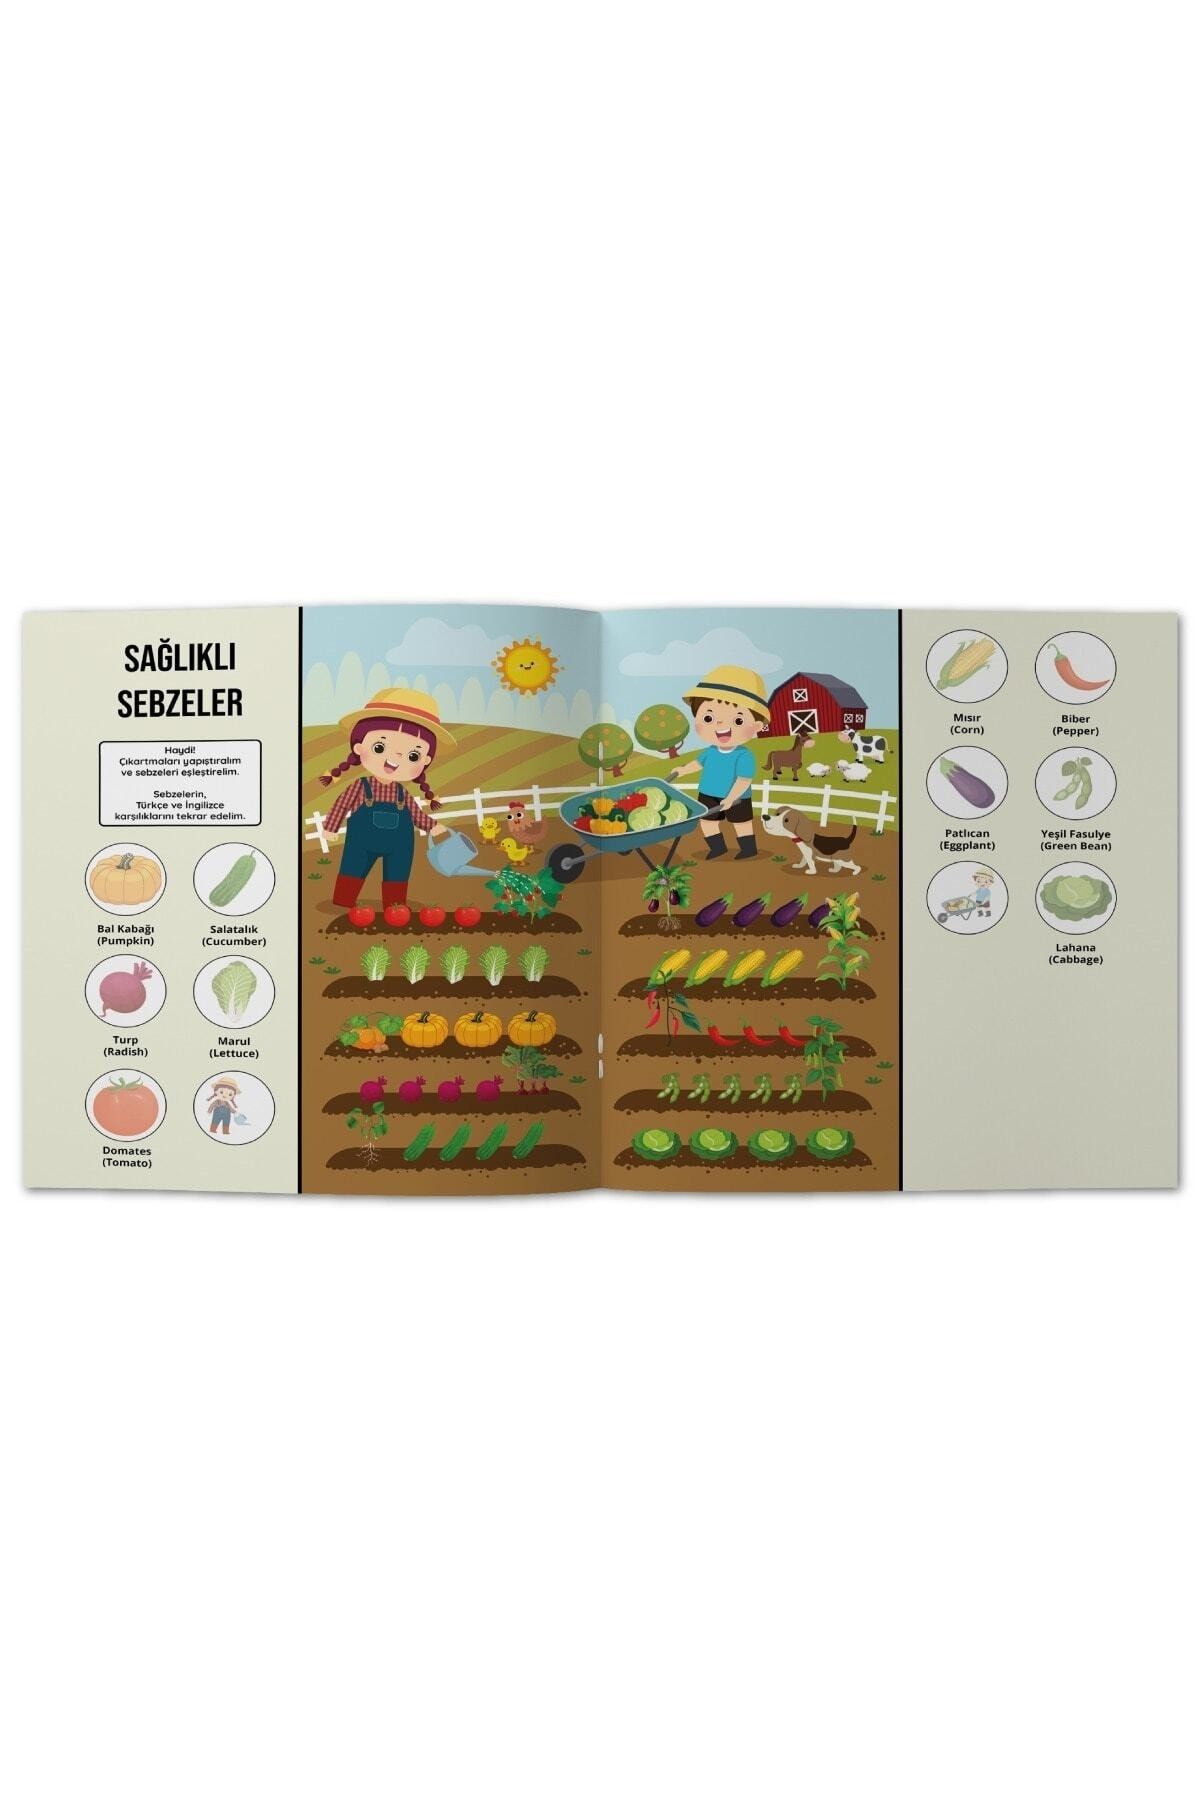 Etkinliklerle Meyveler Sebzeler - Türkçe Ingilizce - 50 Çıkartma - 24 Sayfa Eğitici Aktivite Kitabı